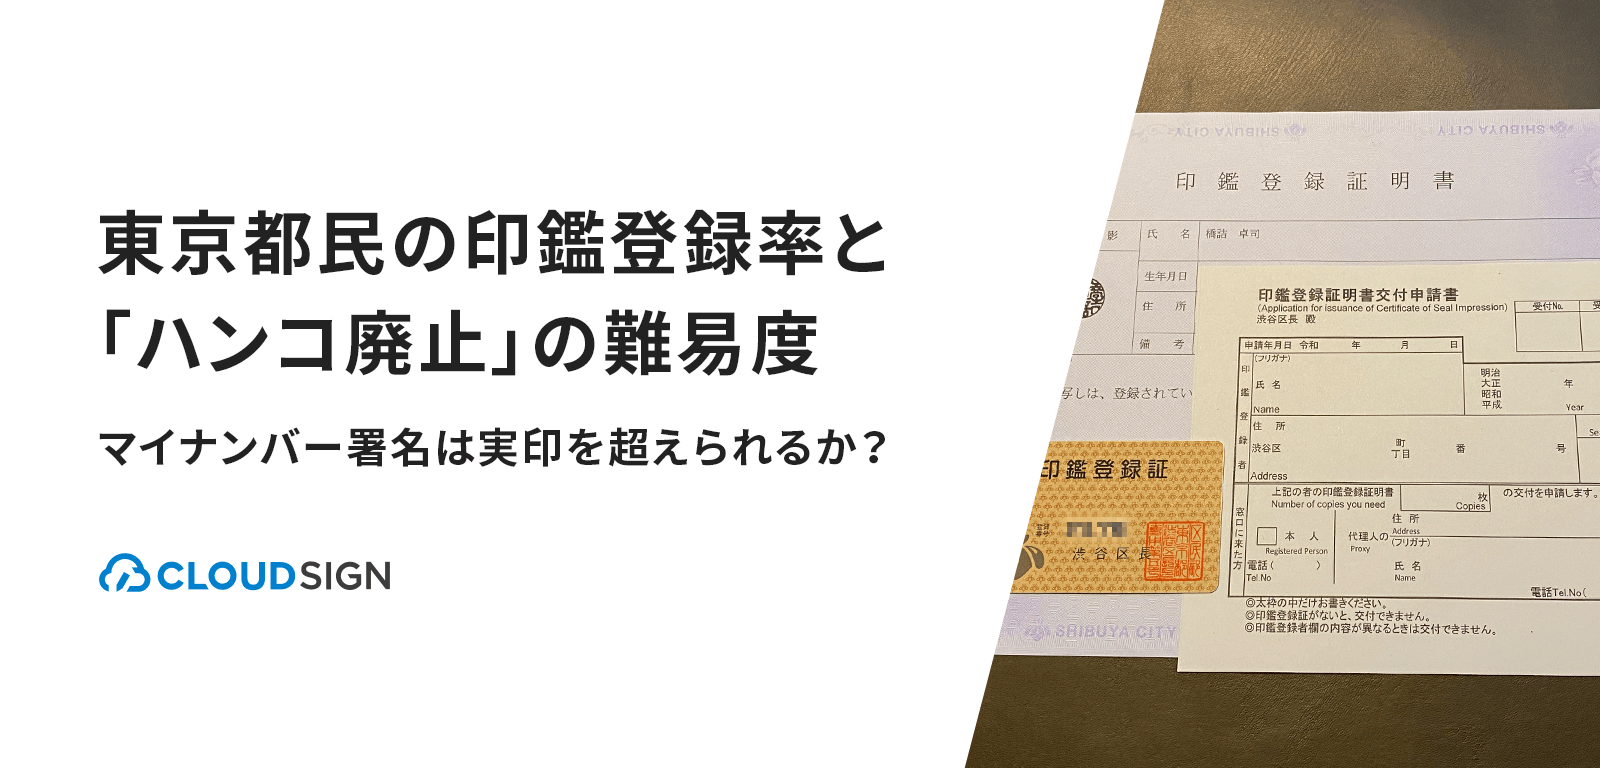 東京都民の印鑑登録率と「ハンコ廃止」の難易度